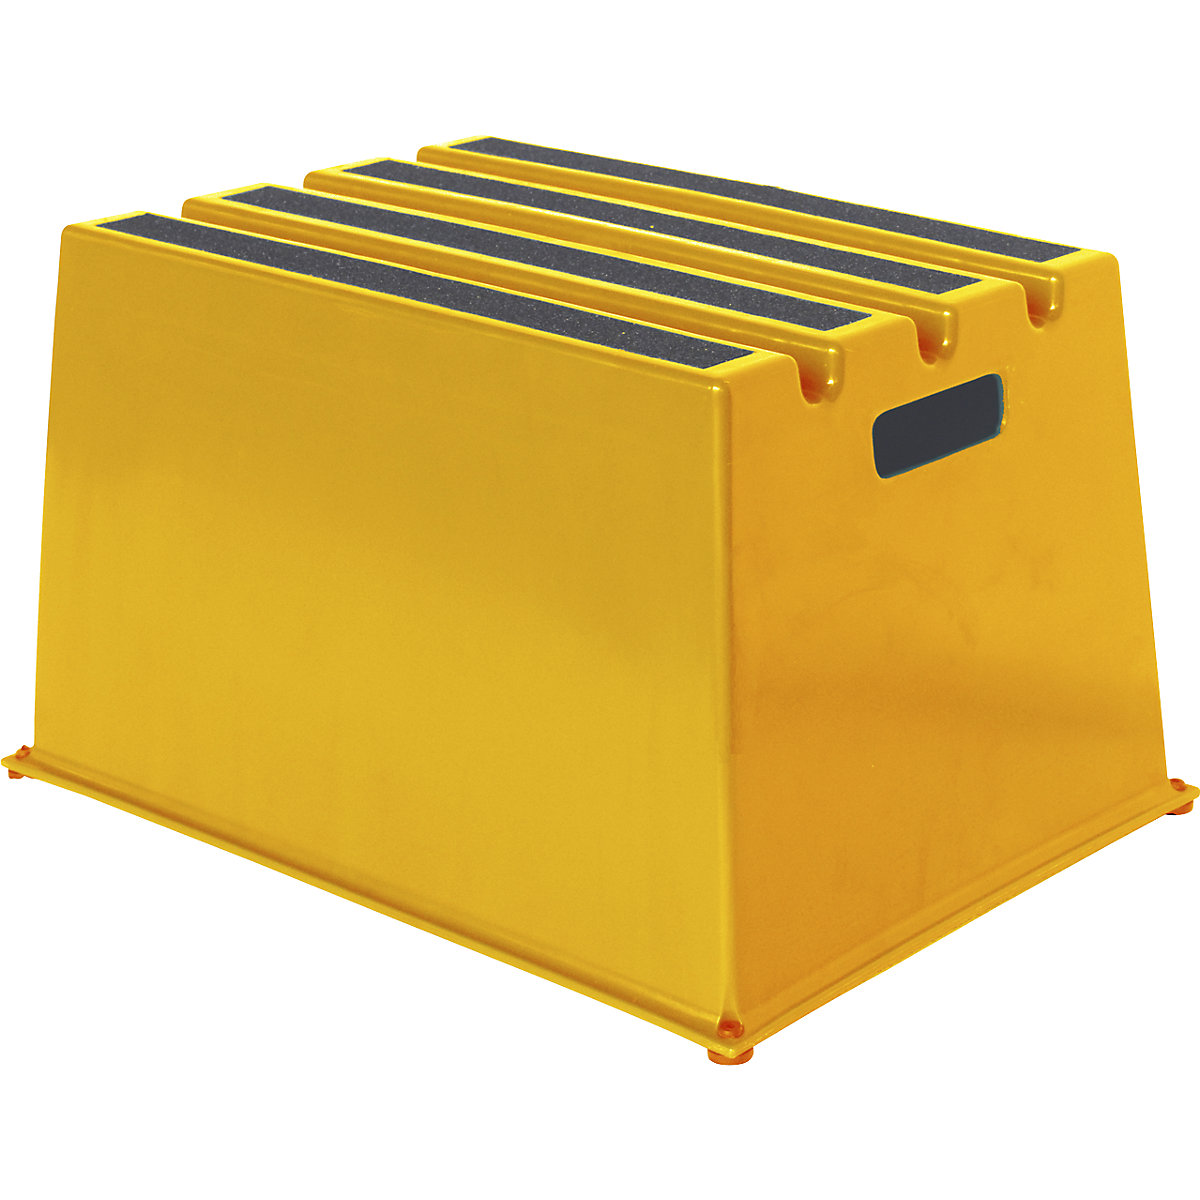 Műanyag fellépő csúszásmentes fokokkal – Twinco, teherbírás 150 kg, 1 lépcsőfok, sárga-7